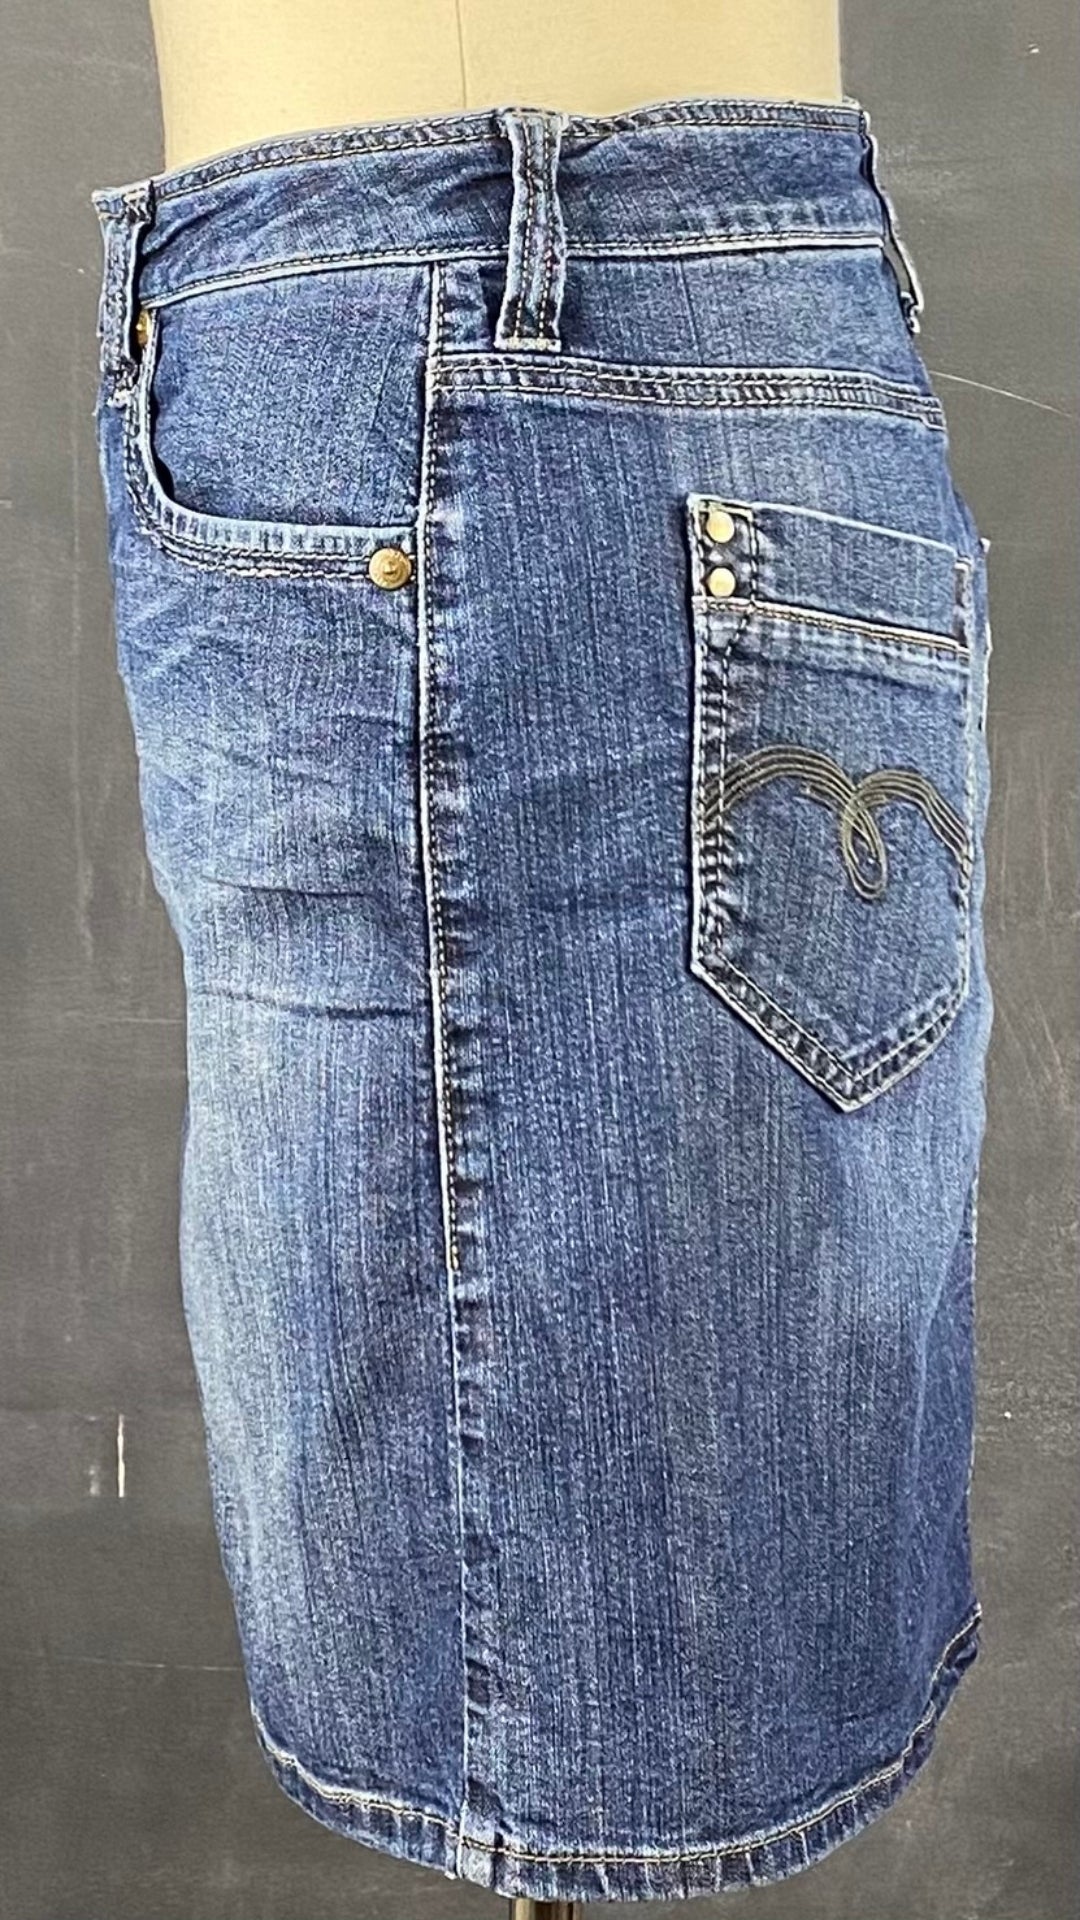 Jupe en jeans classique bleue Mavi, taille estimée à small. Vue de côté.